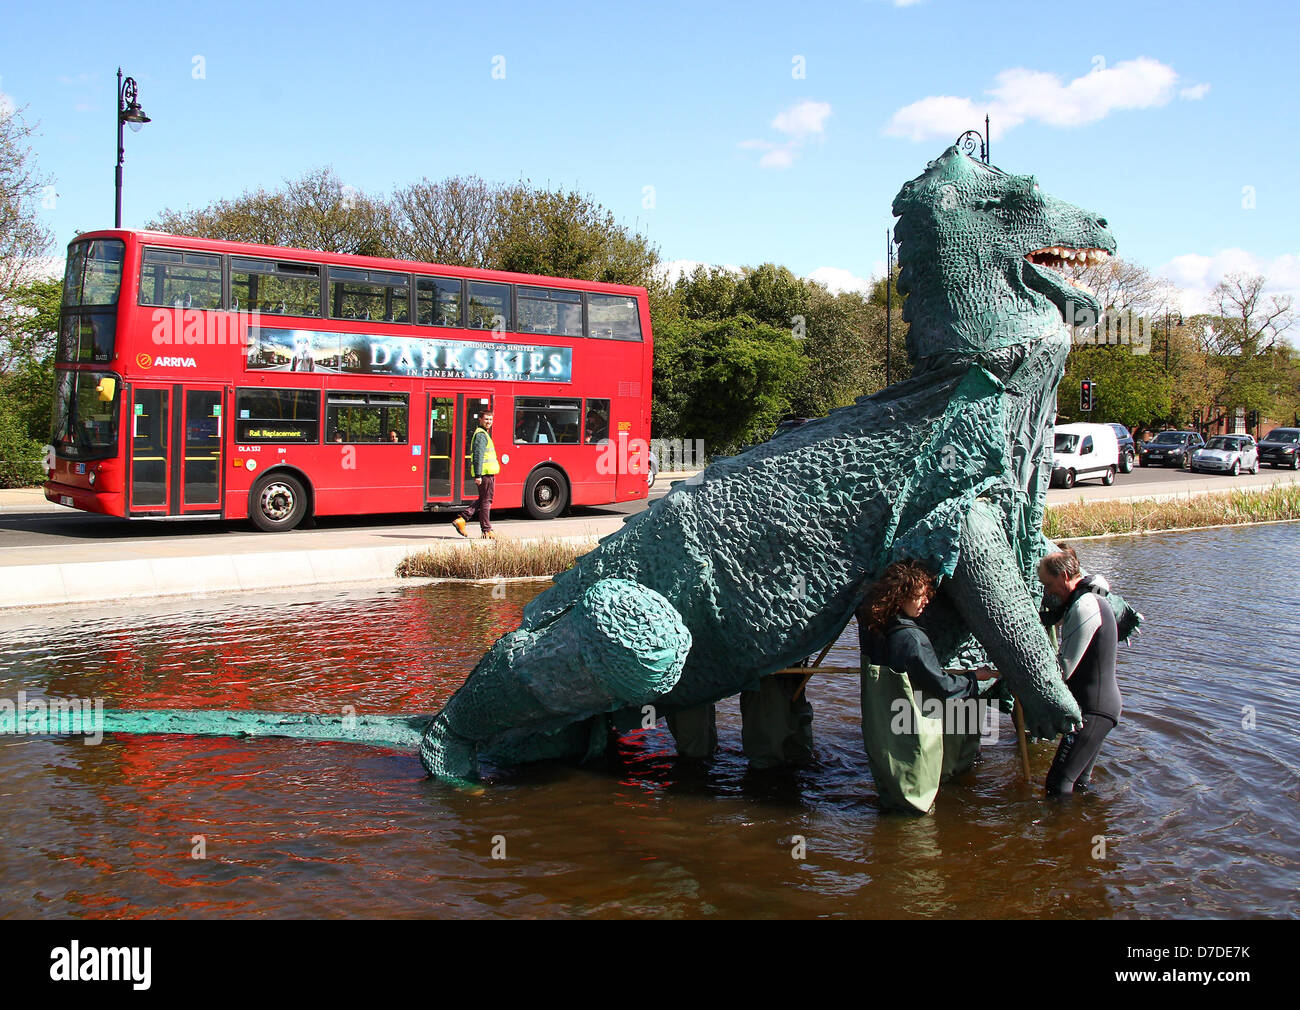 Londres, Reino Unido, 4 de mayo de 2013: Serrana Korda es espectacular monstruo gigante marioneta toma parte en una actuación especial "parodia la Bestia' Foto de stock